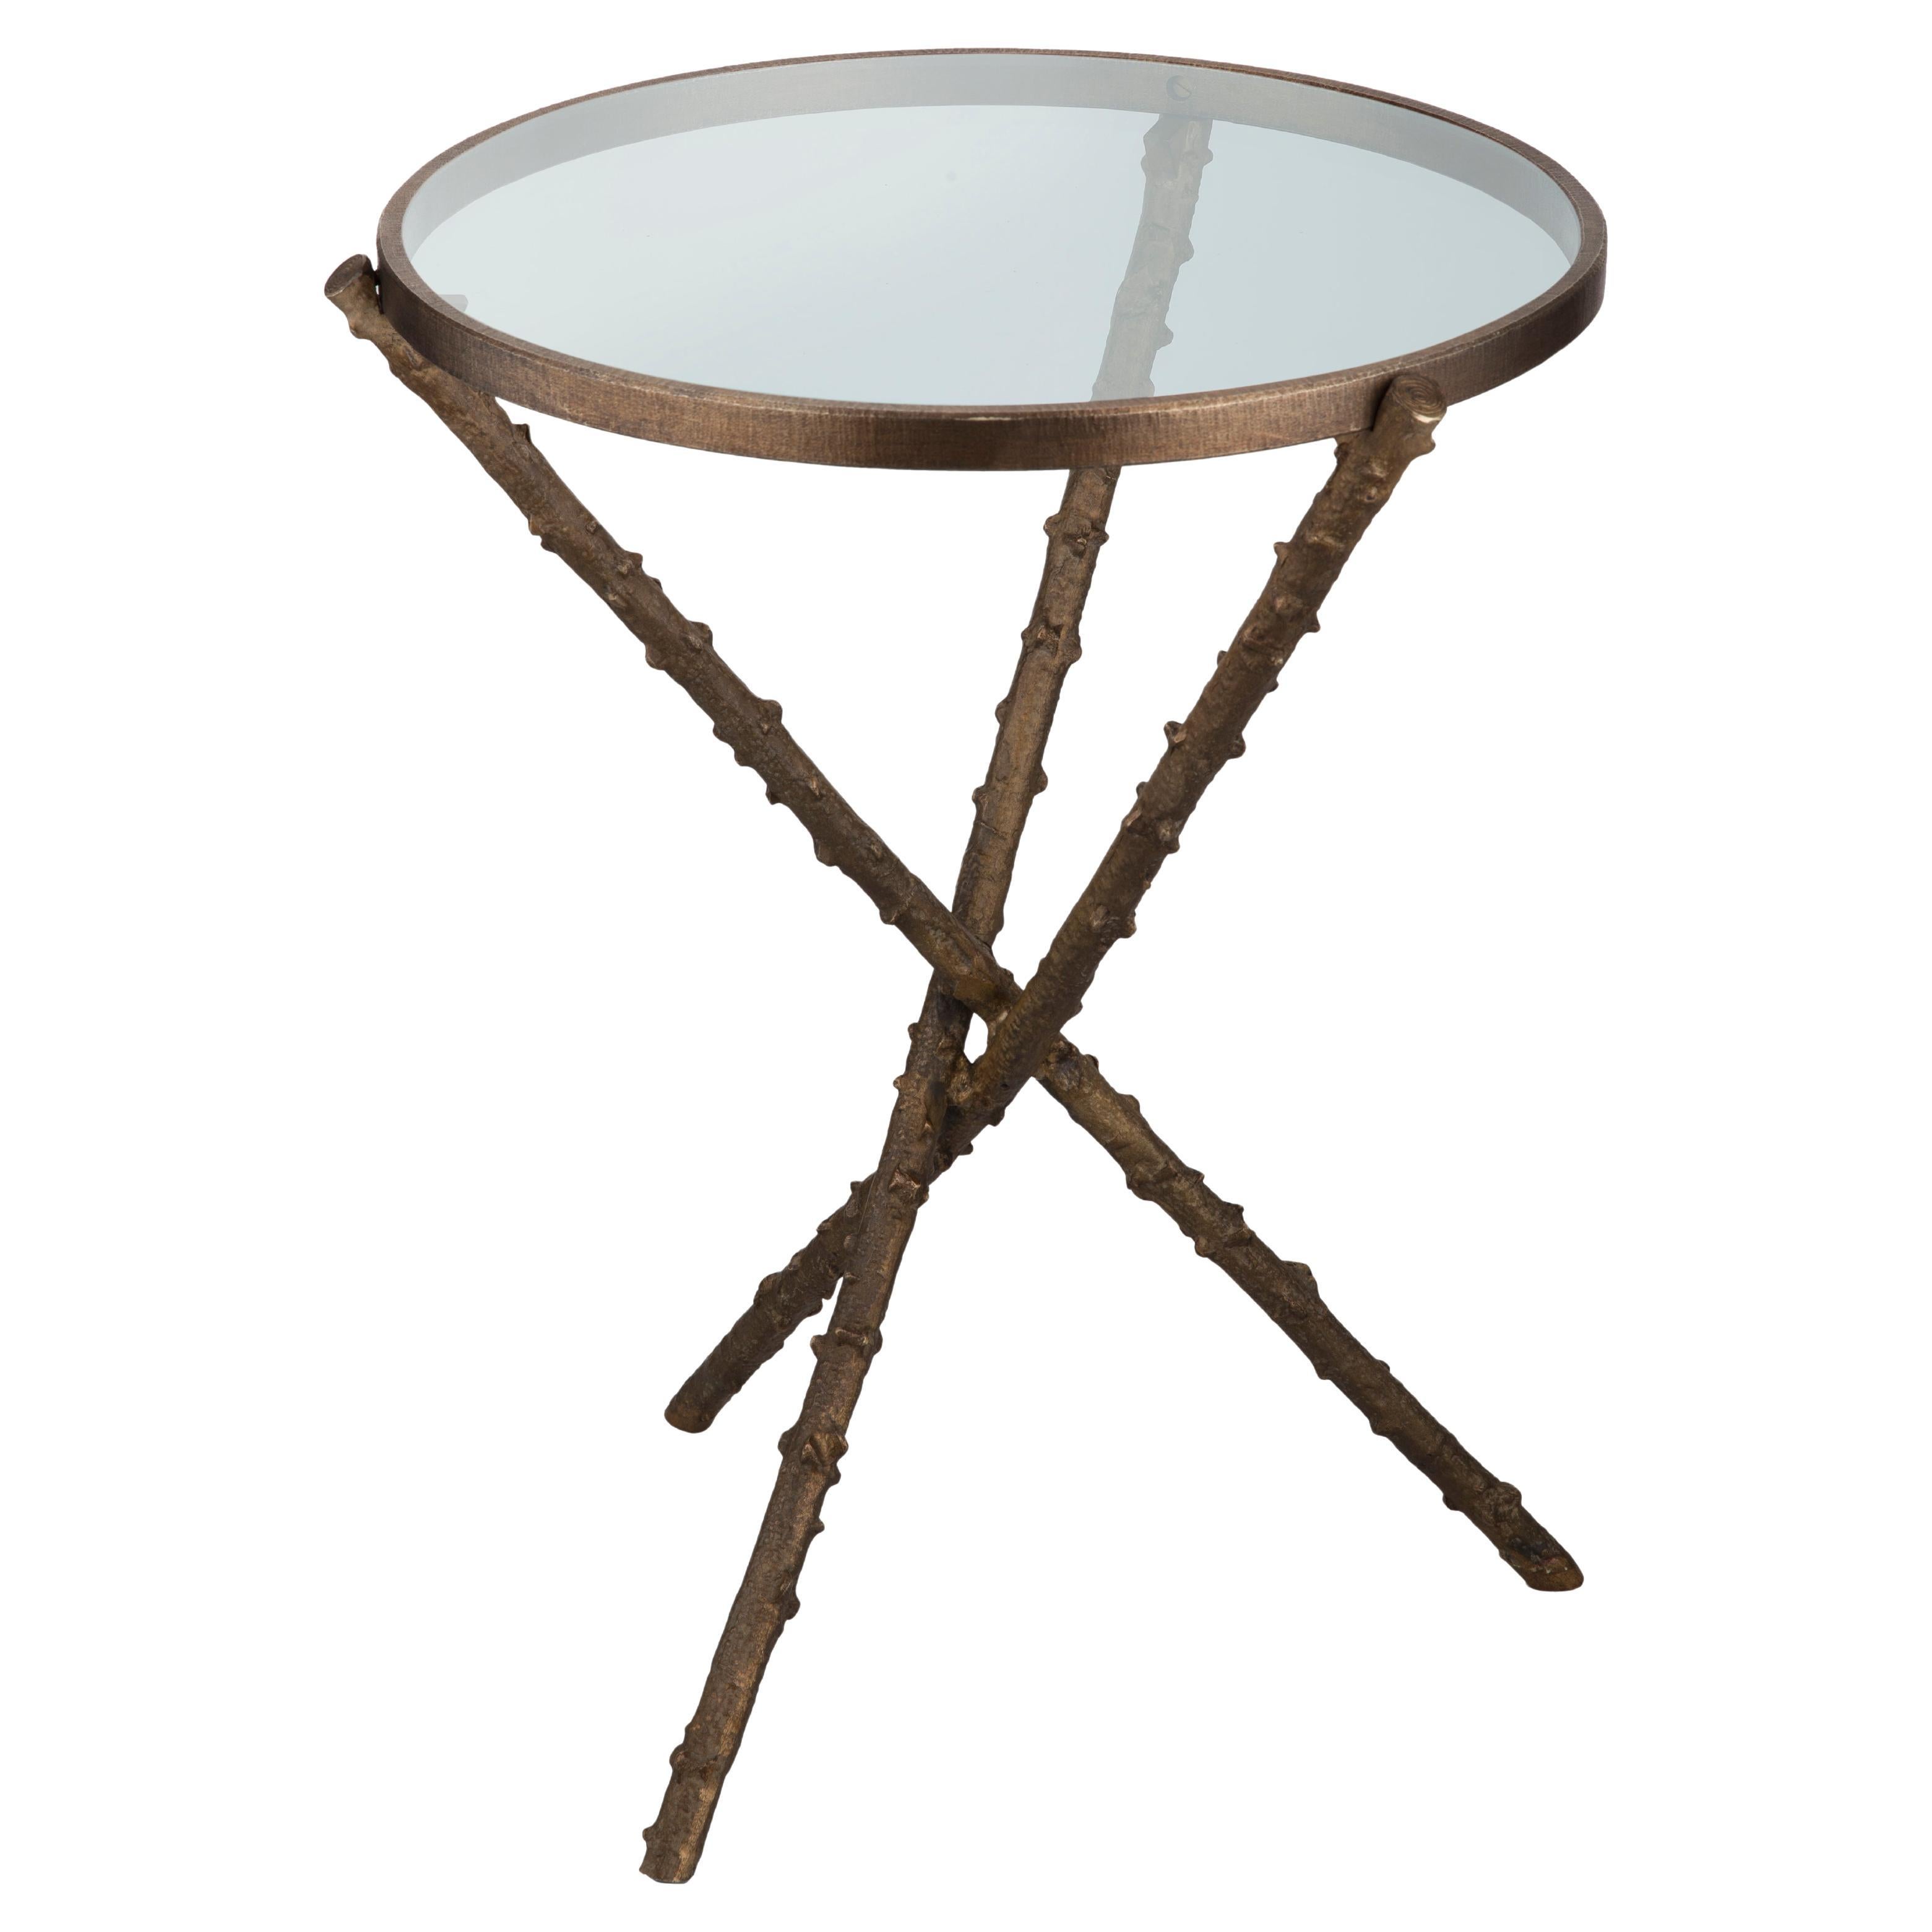 Table d'appoint en forme de fouet avec structure en laiton bruni moulé et plateau en verre